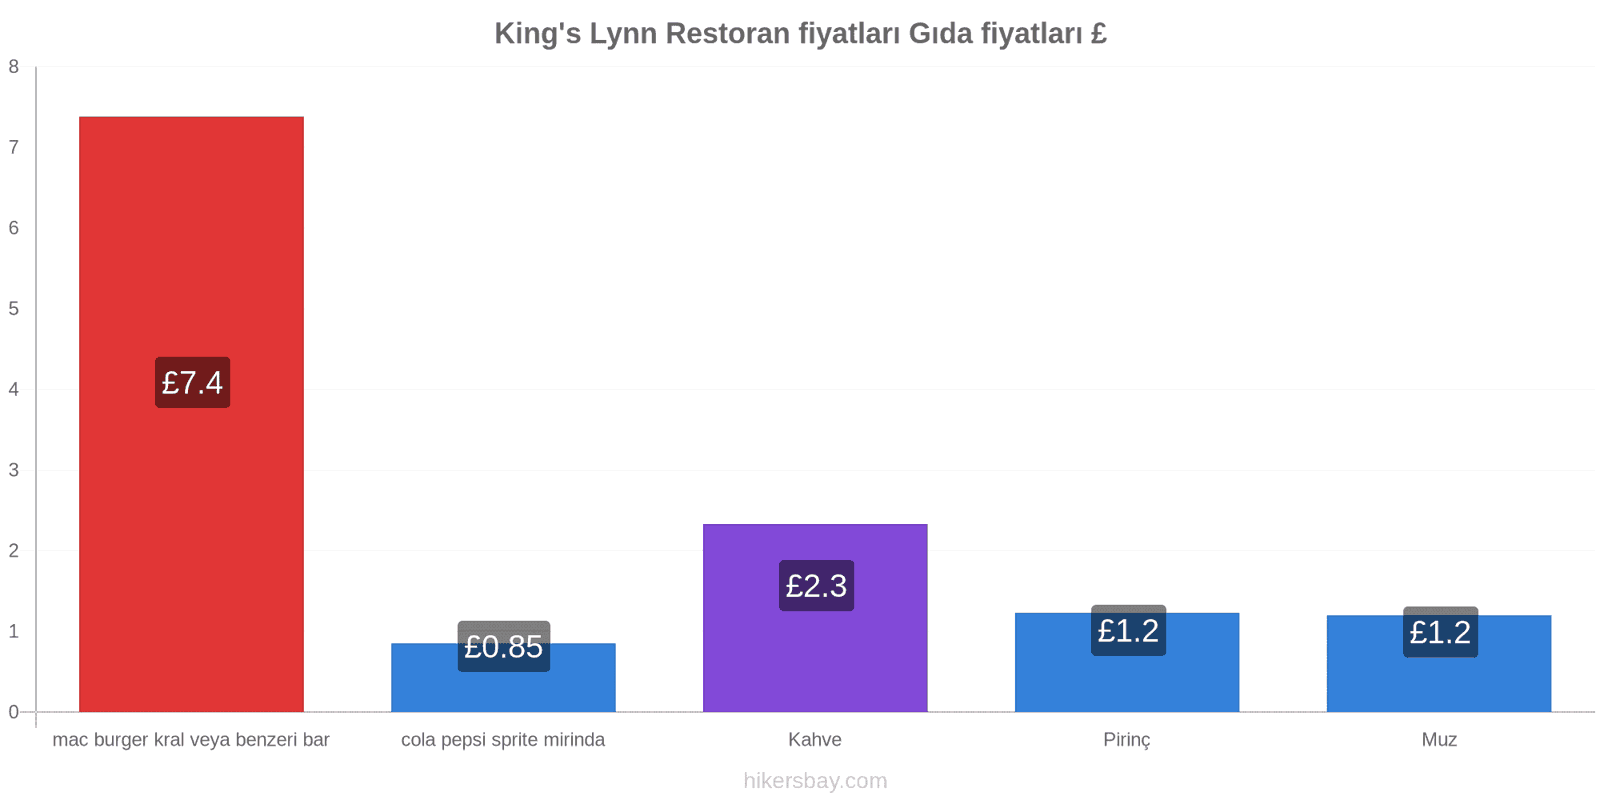 King's Lynn fiyat değişiklikleri hikersbay.com